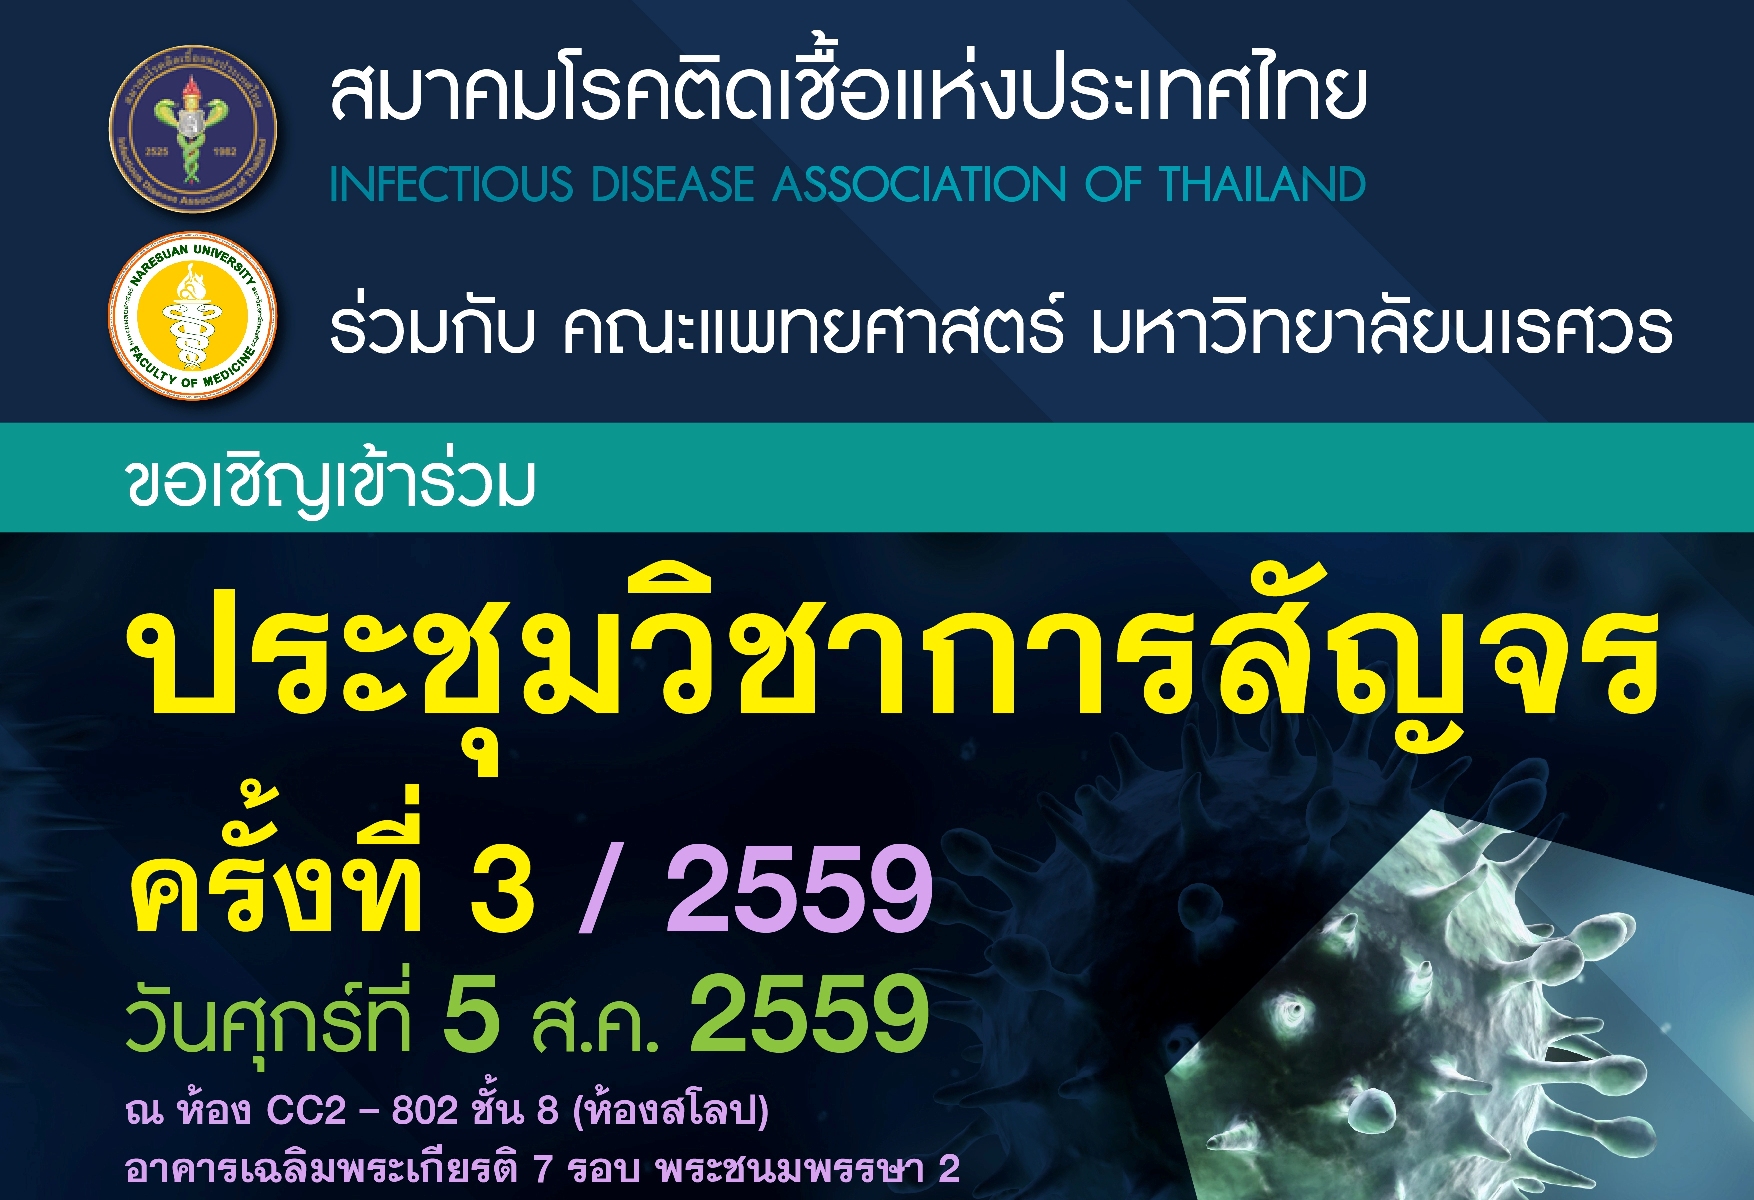 ขอเชิญร่วมงานประชุมวิชาการสัญจร ครั้งที่ 3/2559 สมาคมโรคติดเชื้อแห่งประเทศไทย